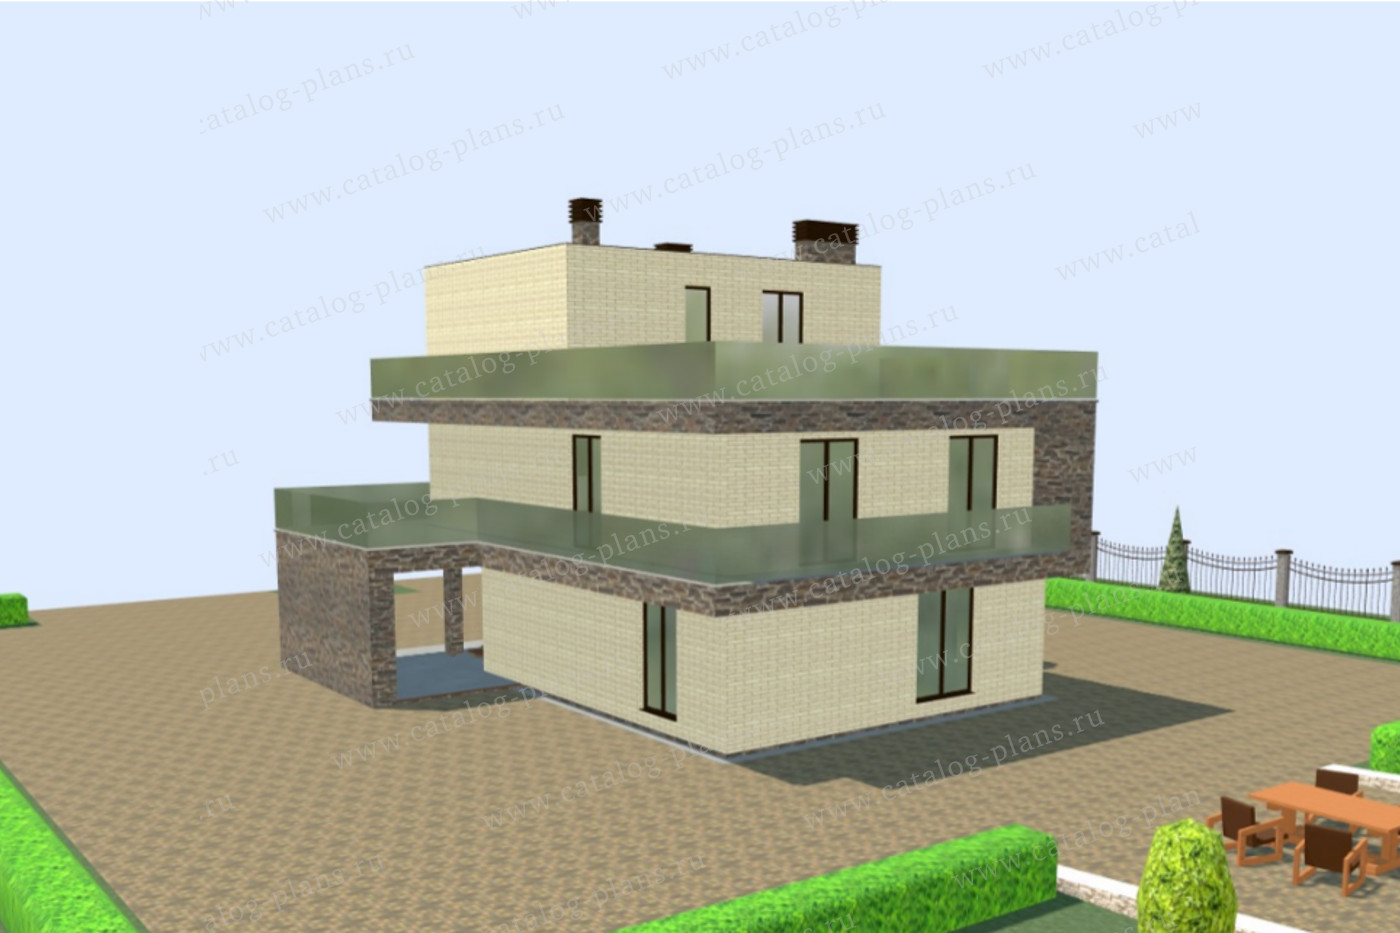 Проект 62-71XGA, жилой дом, материал - монолитный ж/б каркас с заполнением газобетоными блоками 400, количество этажей - 3, архитектурный стиль - хай-тек, фундамент - монолитный ленточный ж/б